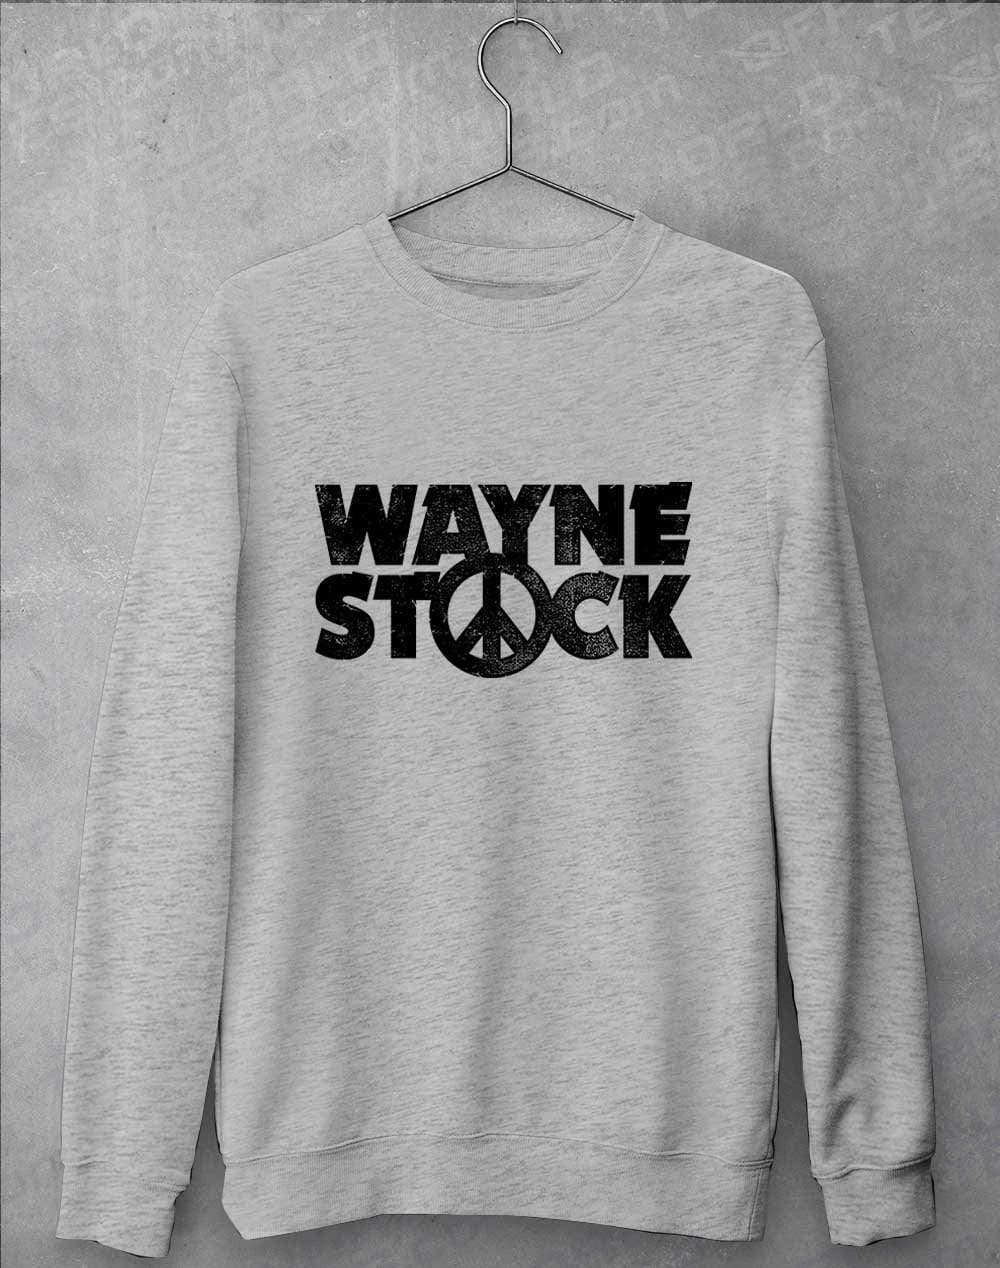 Waynestock Sweatshirt S / Heather Grey  - Off World Tees